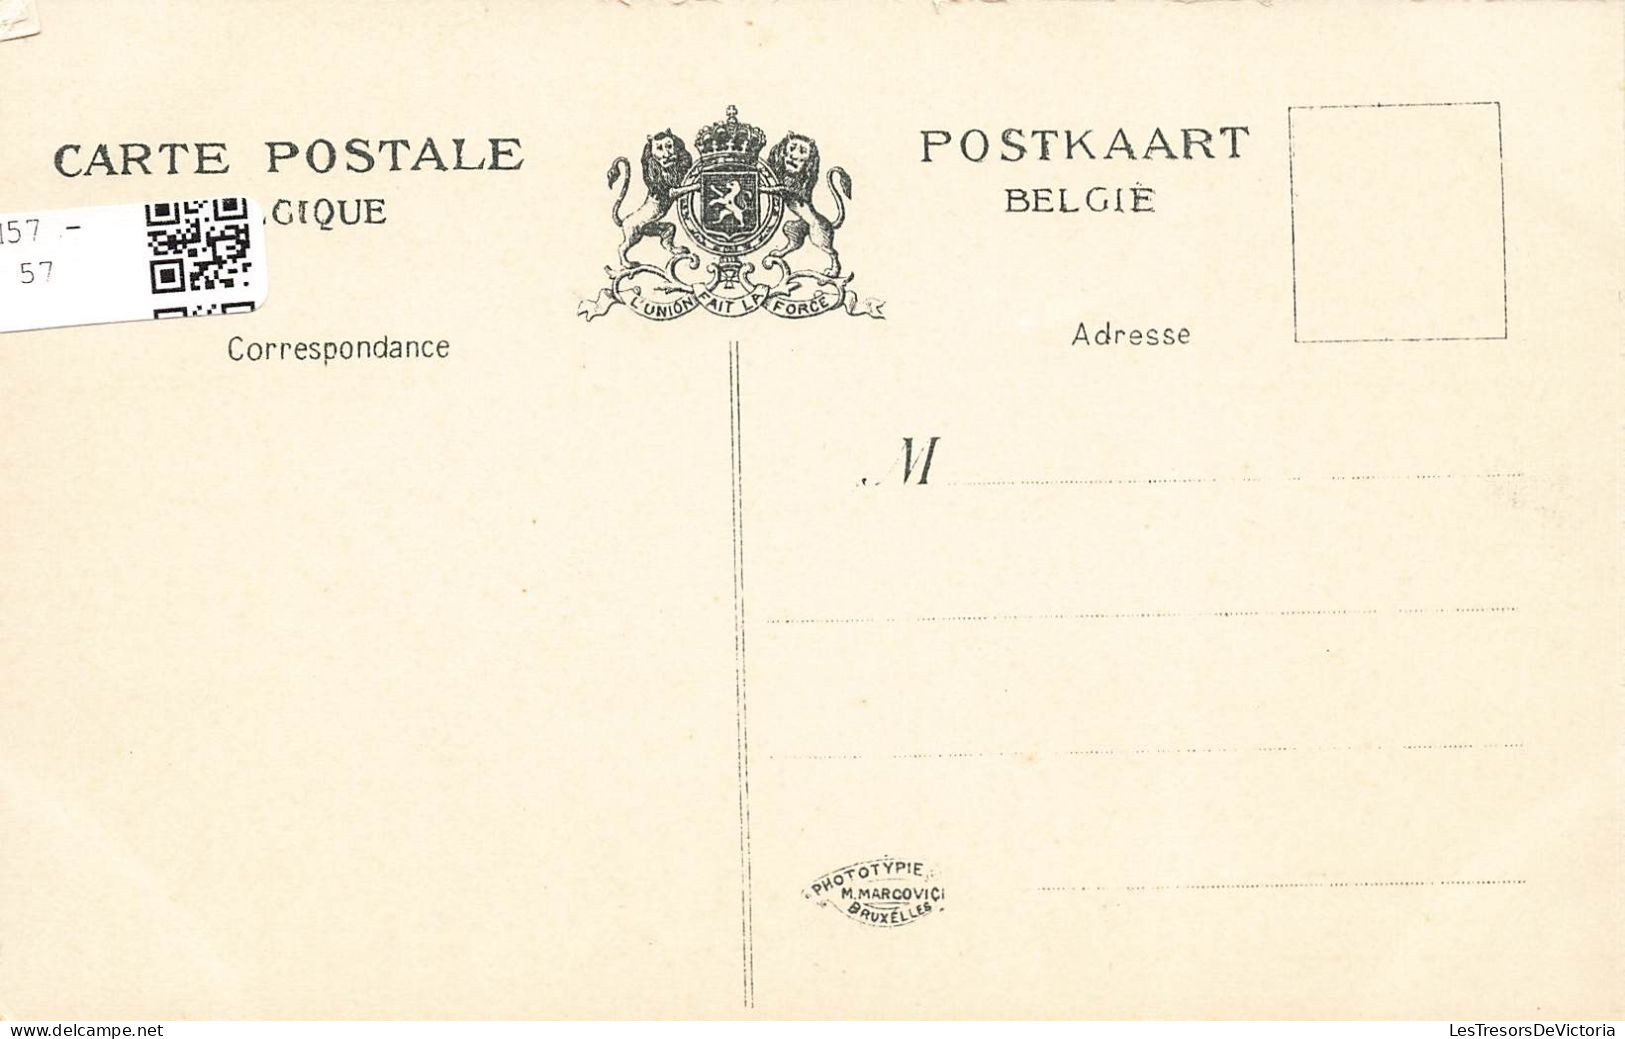 BELGIQUE - Tournai - Vue Générale De La Grosse Tour - Animé - Carte Postale Ancienne - Tournai